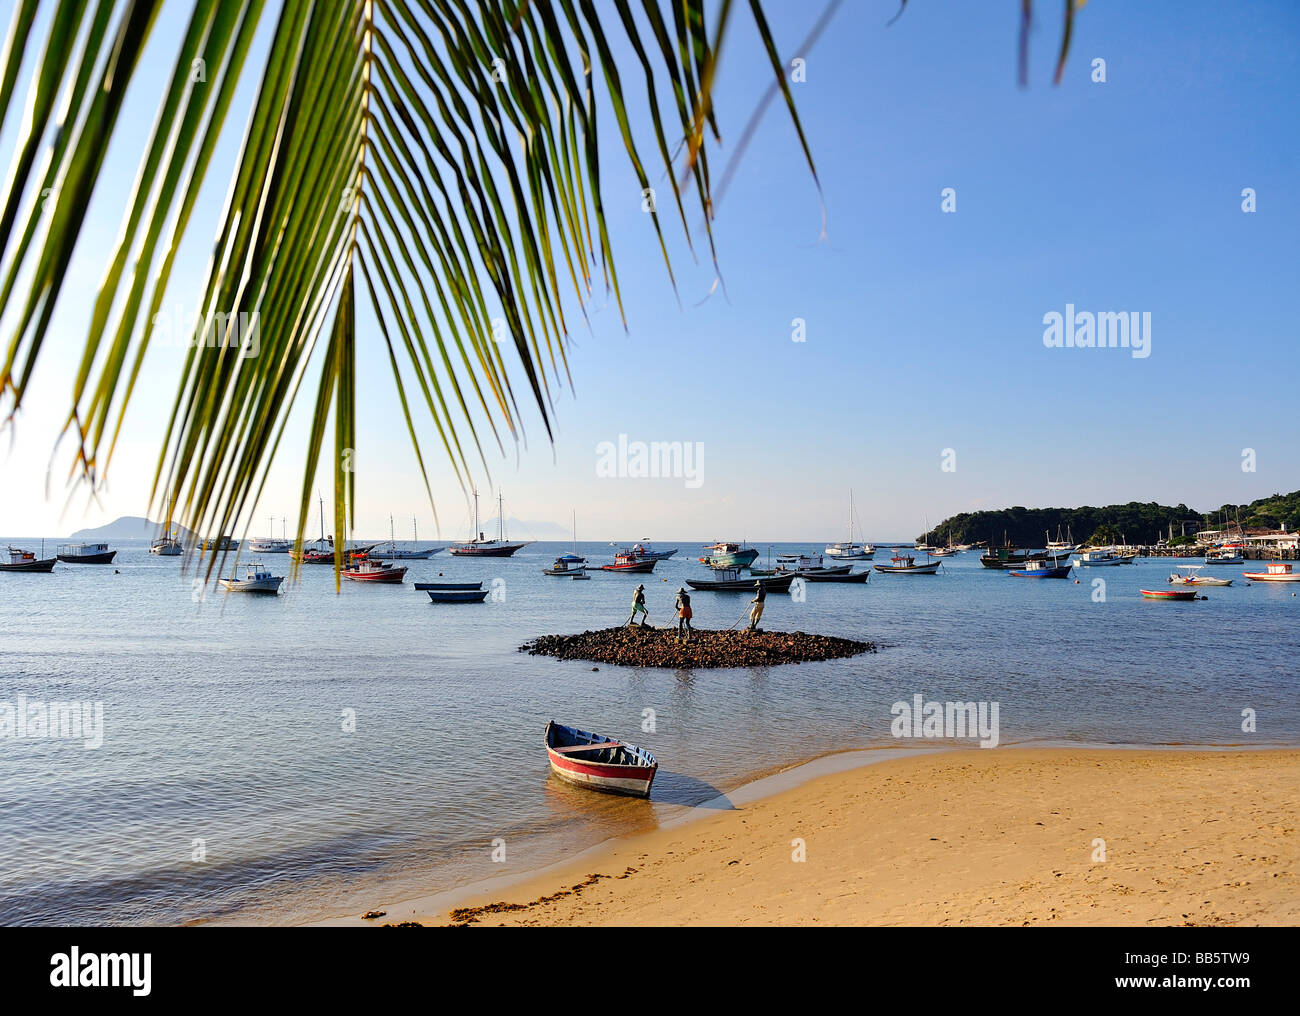 Wonderful beach in Buzios, Rio de Janeiro, Brazil Stock Photo